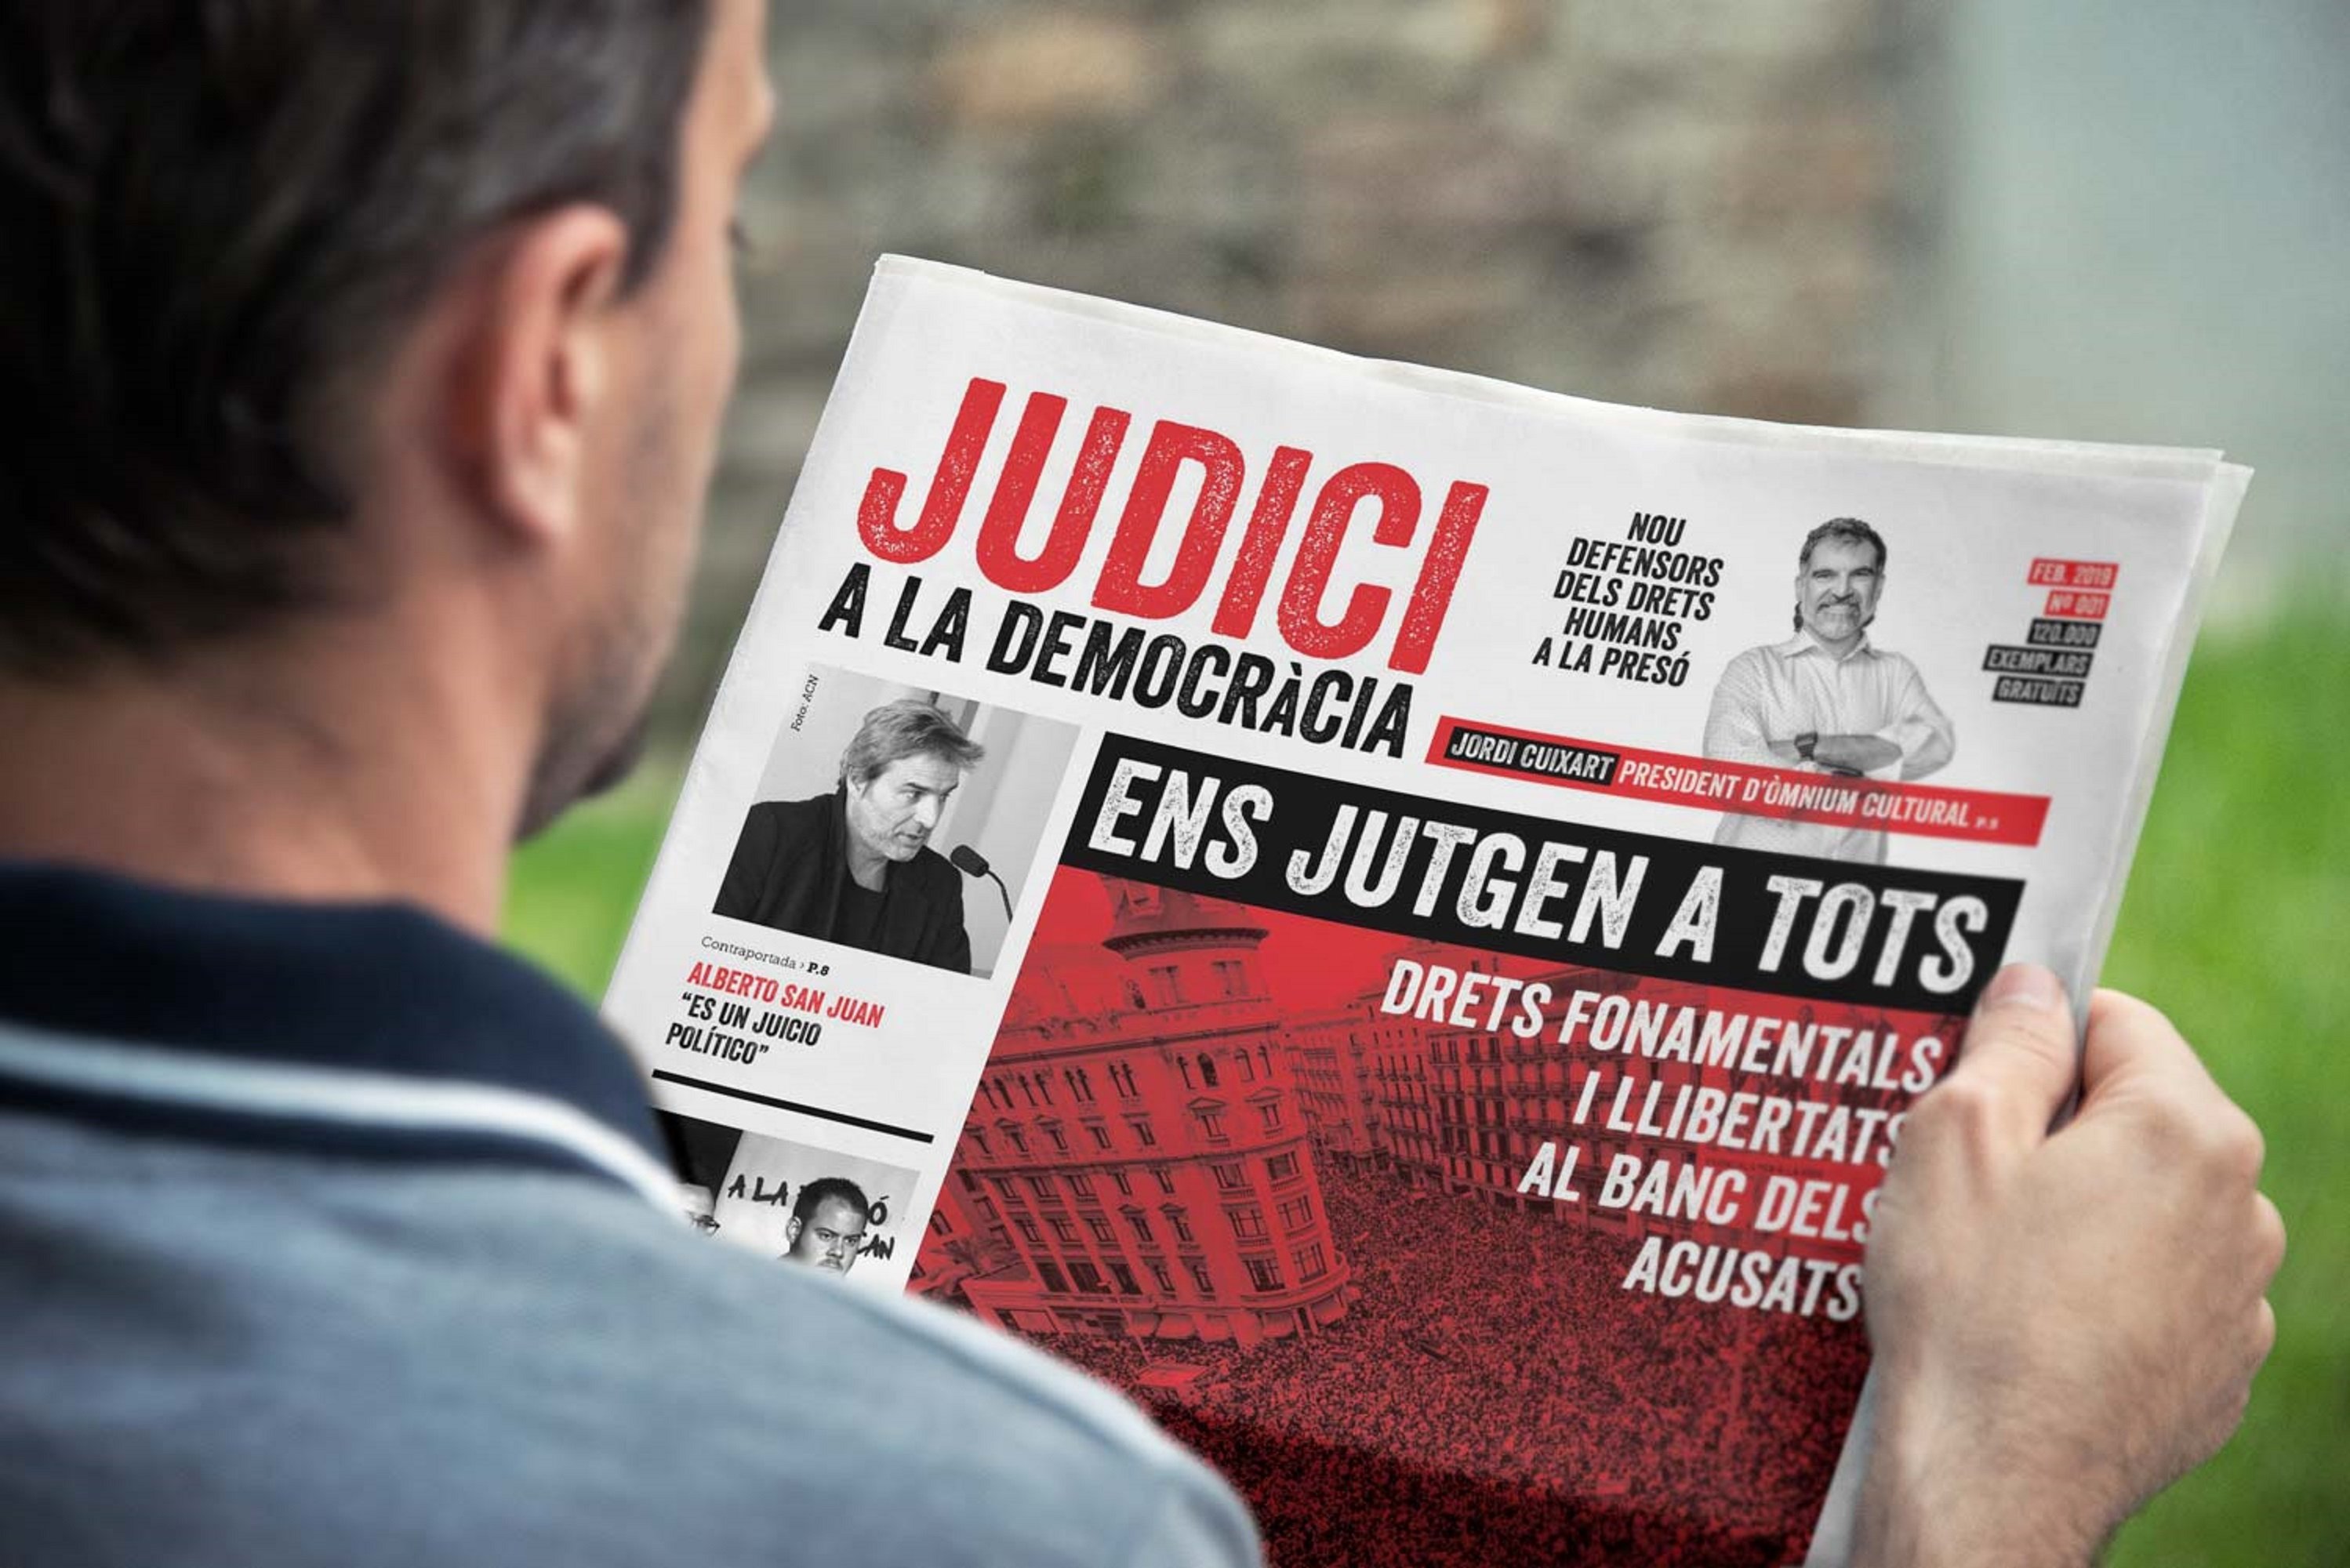 Òmnium denuncia la vulneración de derechos con el diario 'Judici a la Democràcia'